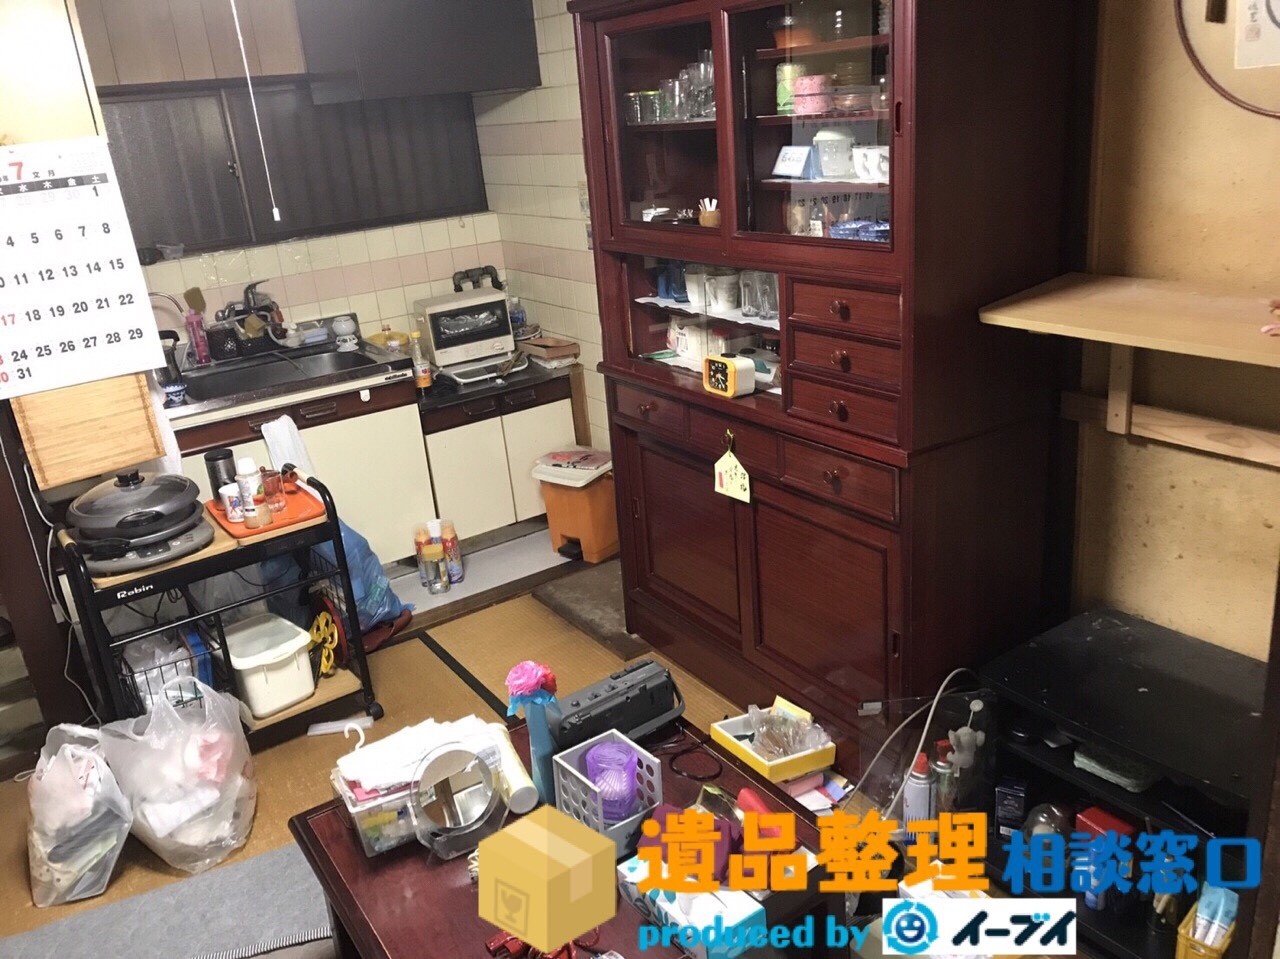 大阪府四条畷市で遺品整理の依頼で生活用品や遺品処分をしました。のアイキャッチ